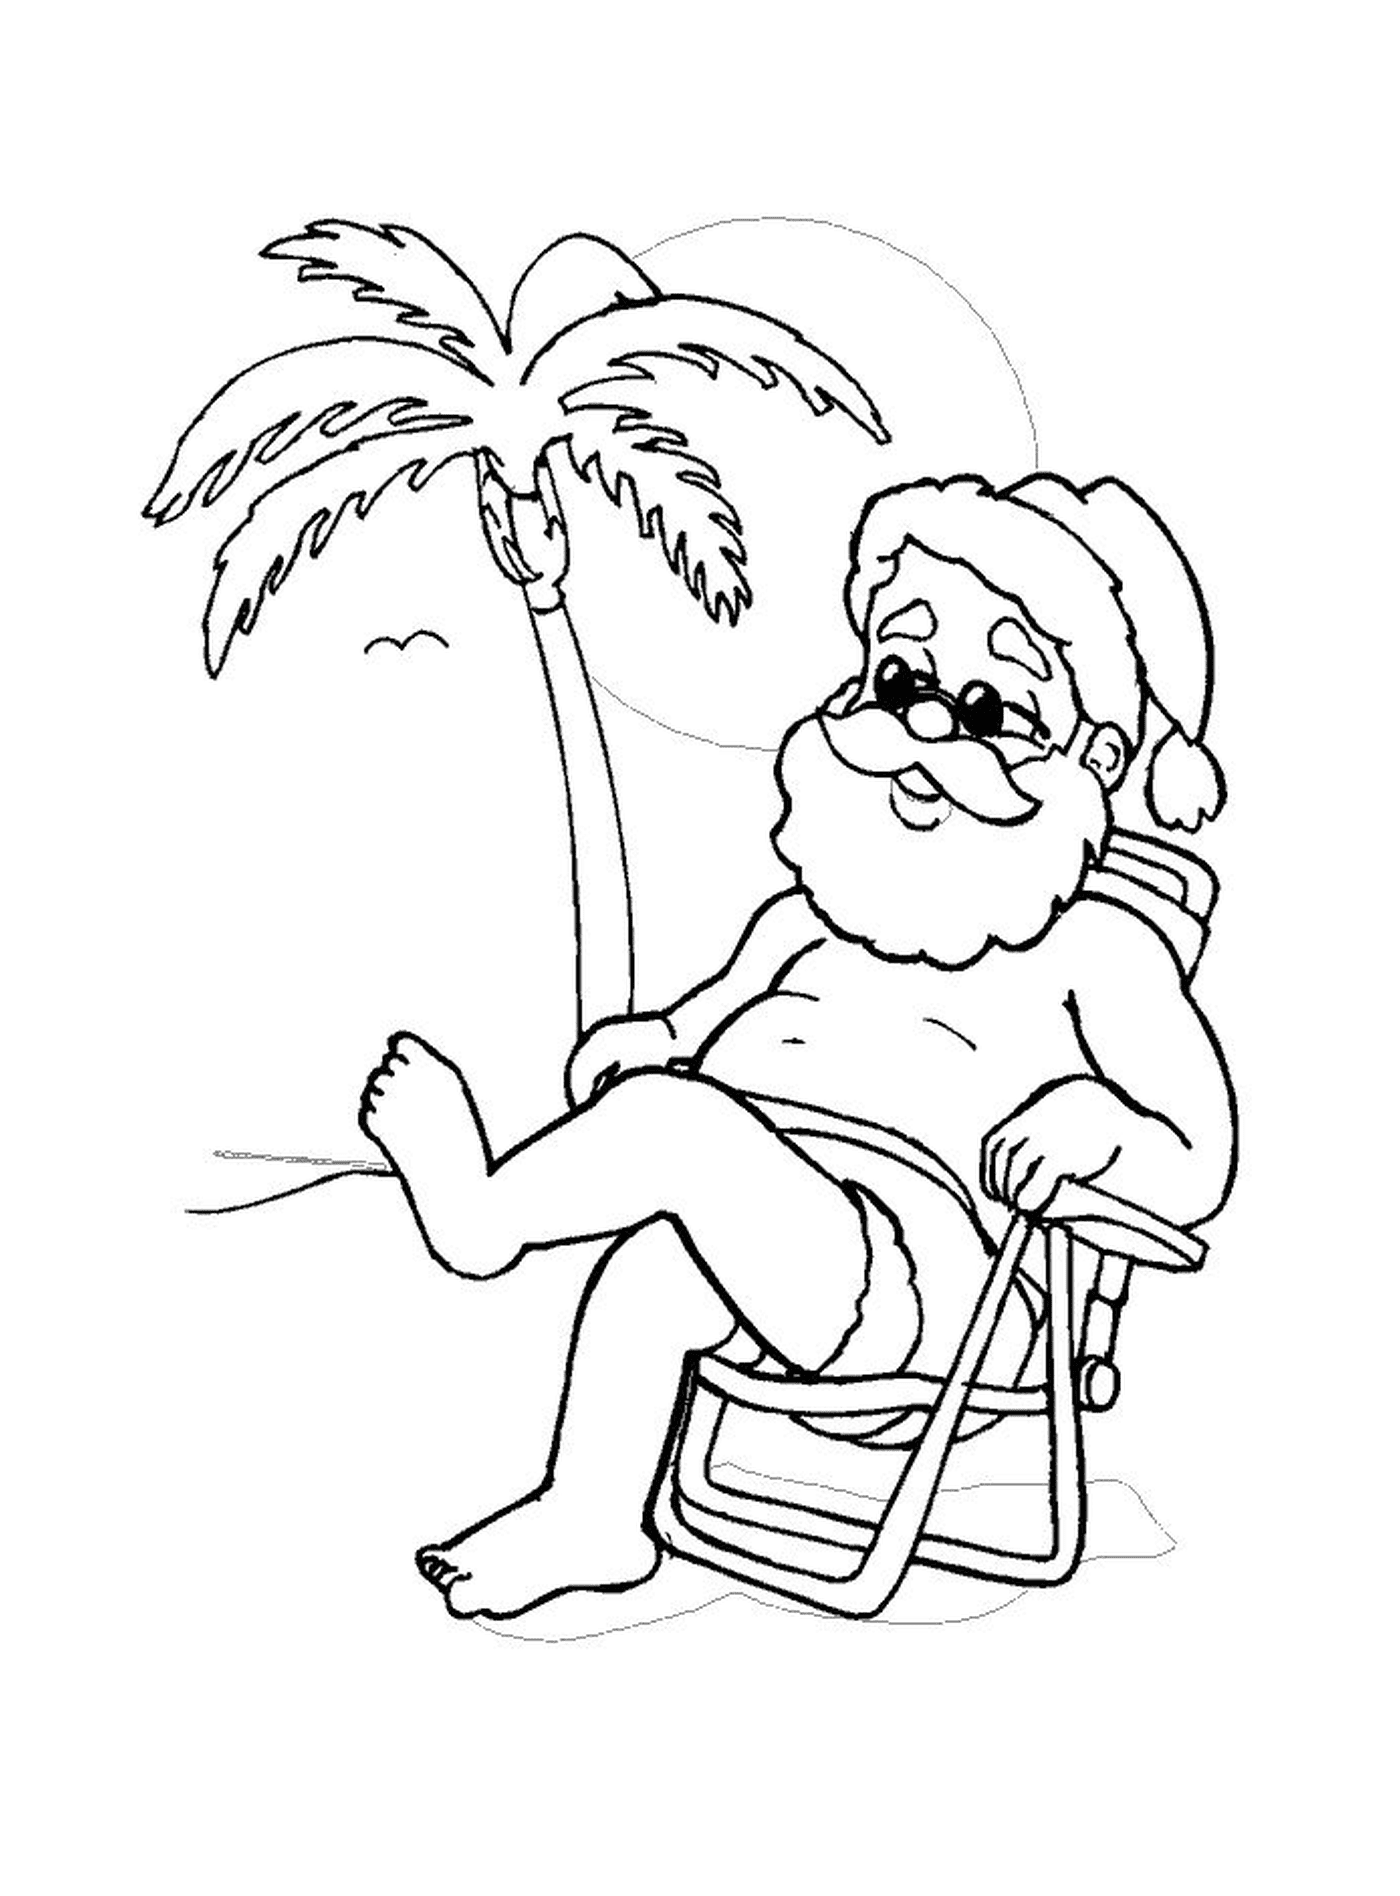  Santa Claus on holiday 